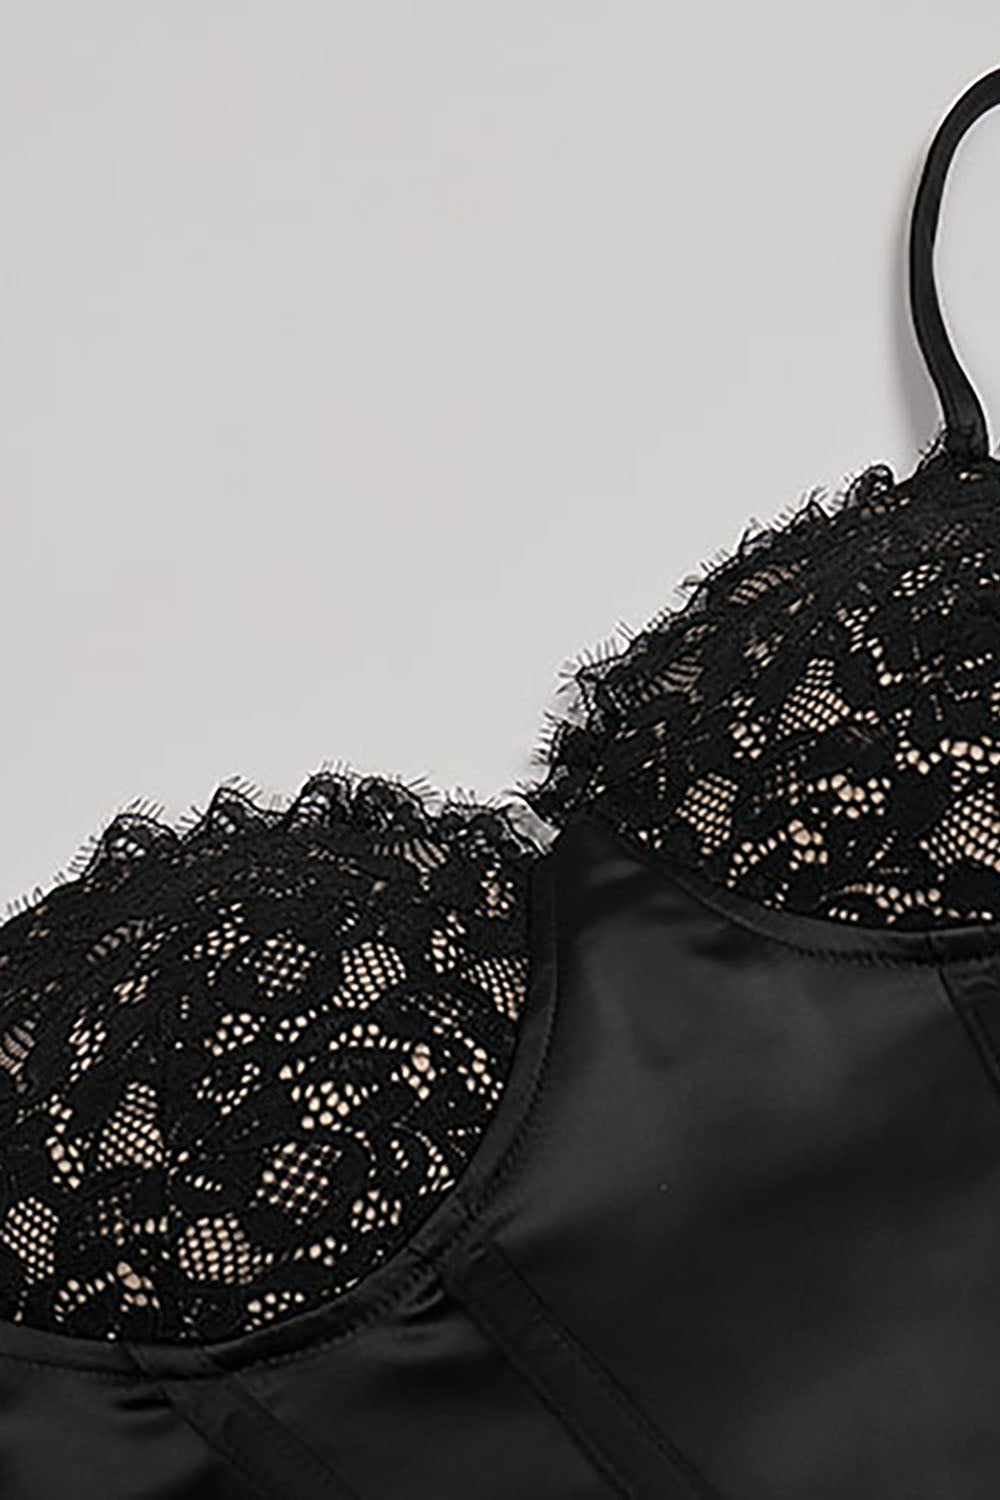 Robe corset noire en satin et dentelle à bretelles